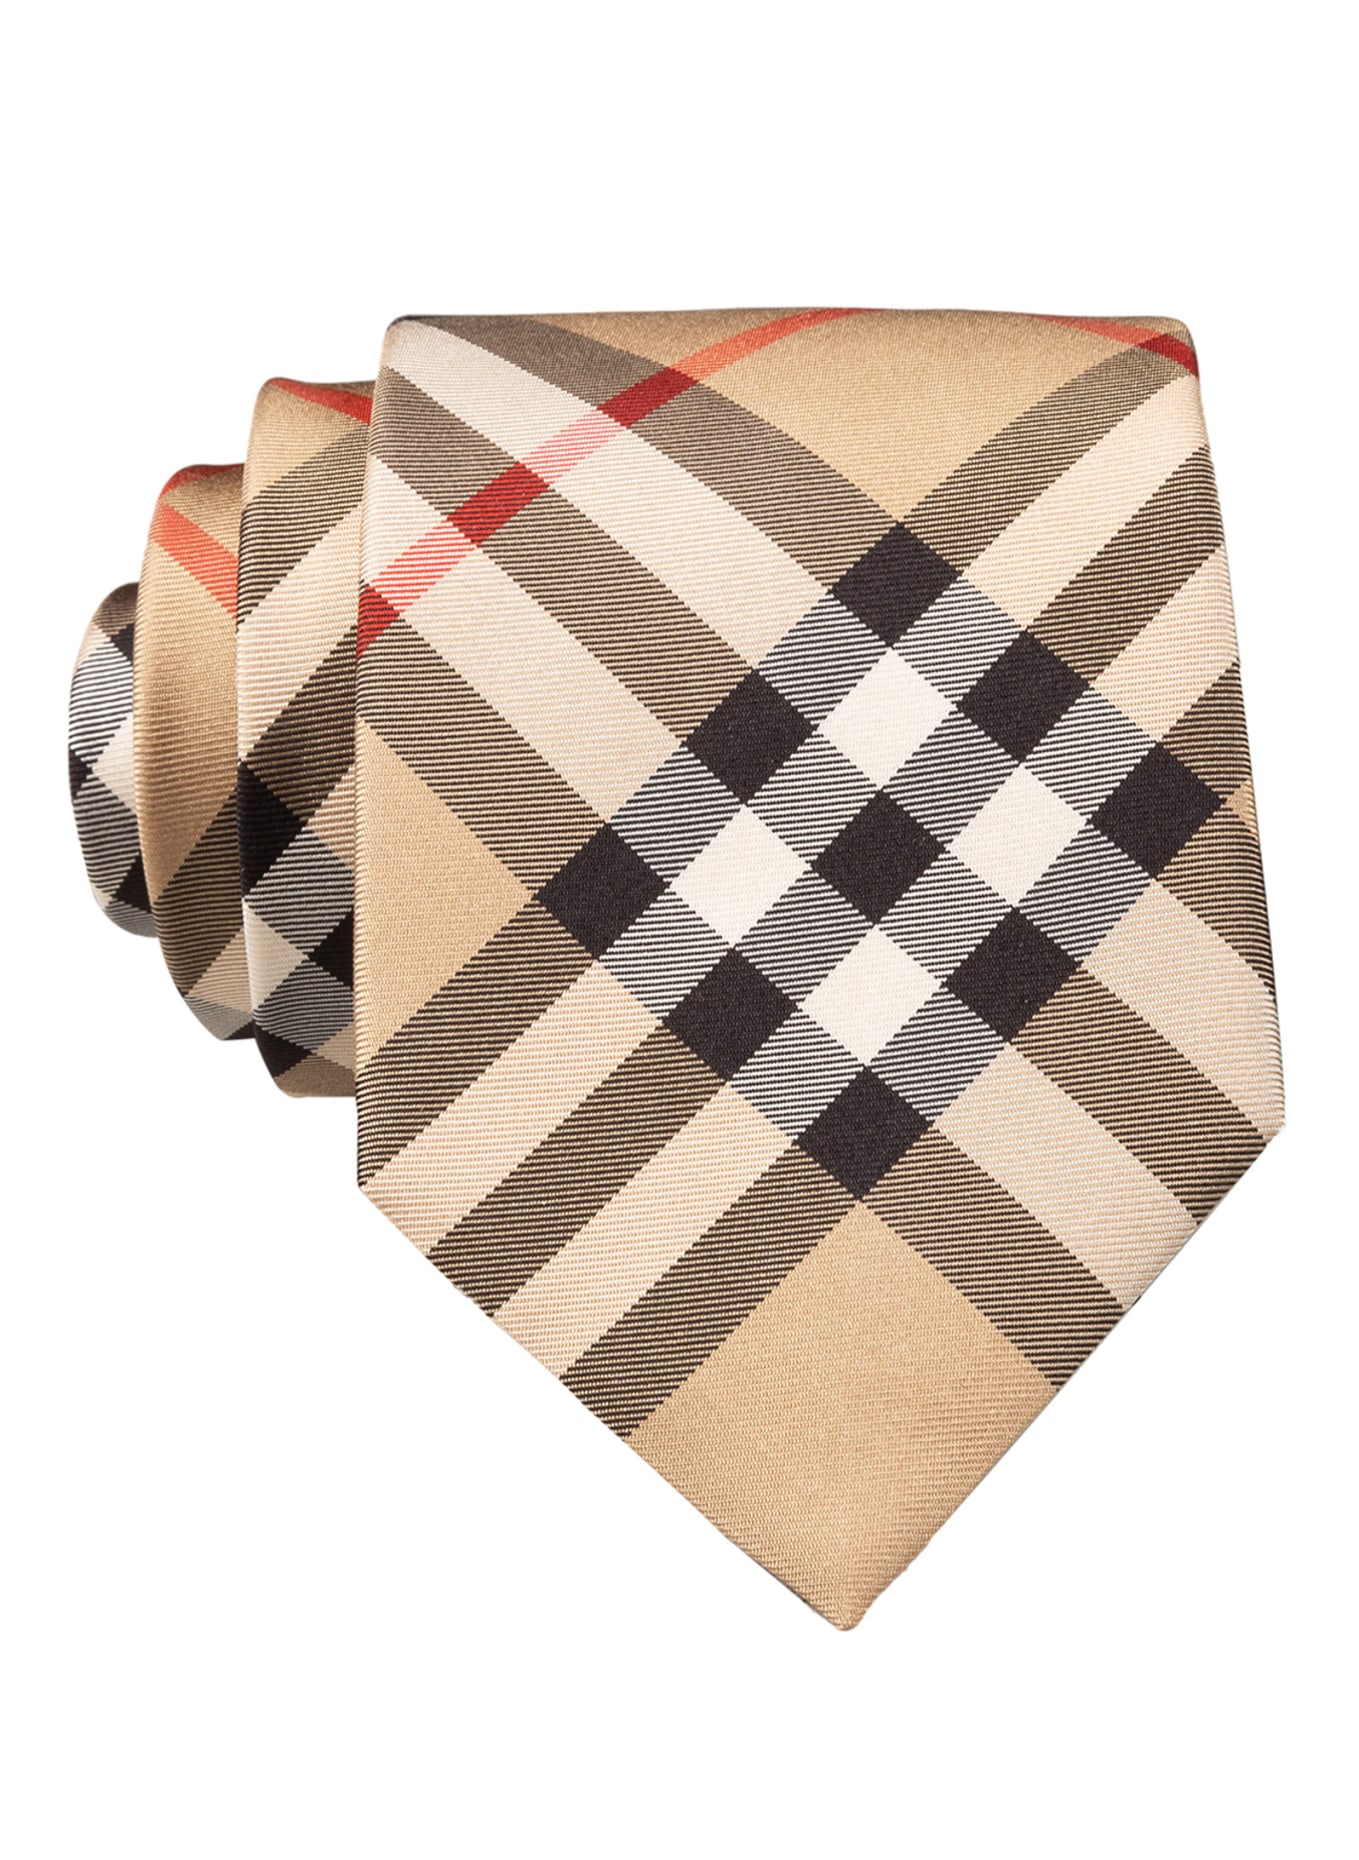 BURBERRY Krawatte MANSTON, Farbe: BEIGE/ SCHWARZ/ ROT (Bild 1)